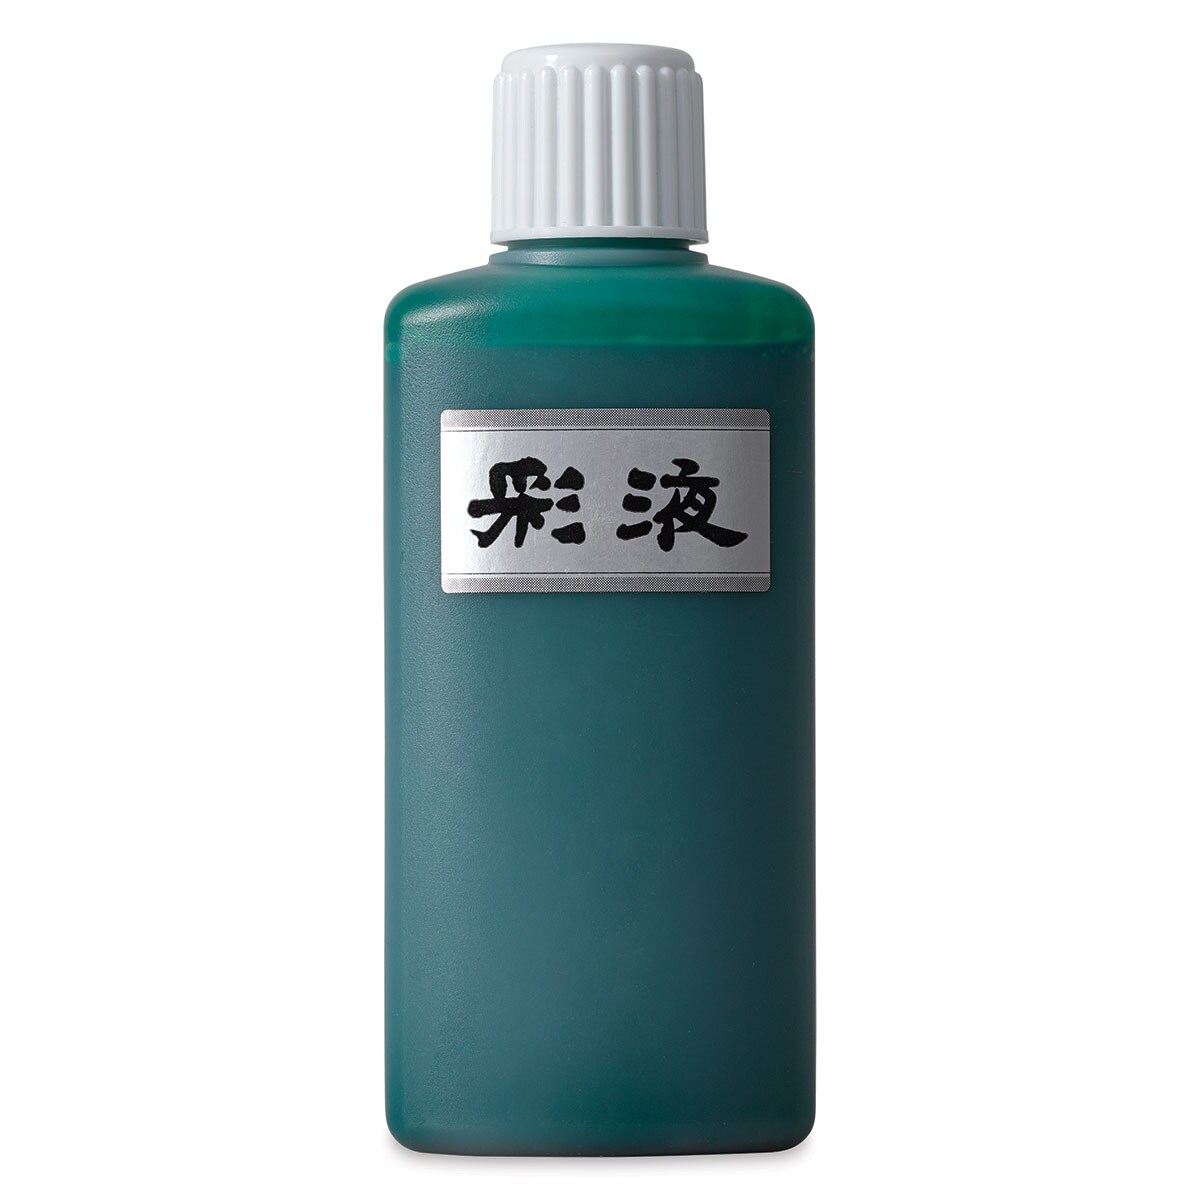 Aitoh Boku-Undo Suminagashi Marbling Ink - Green, 6.75 oz, Bottle